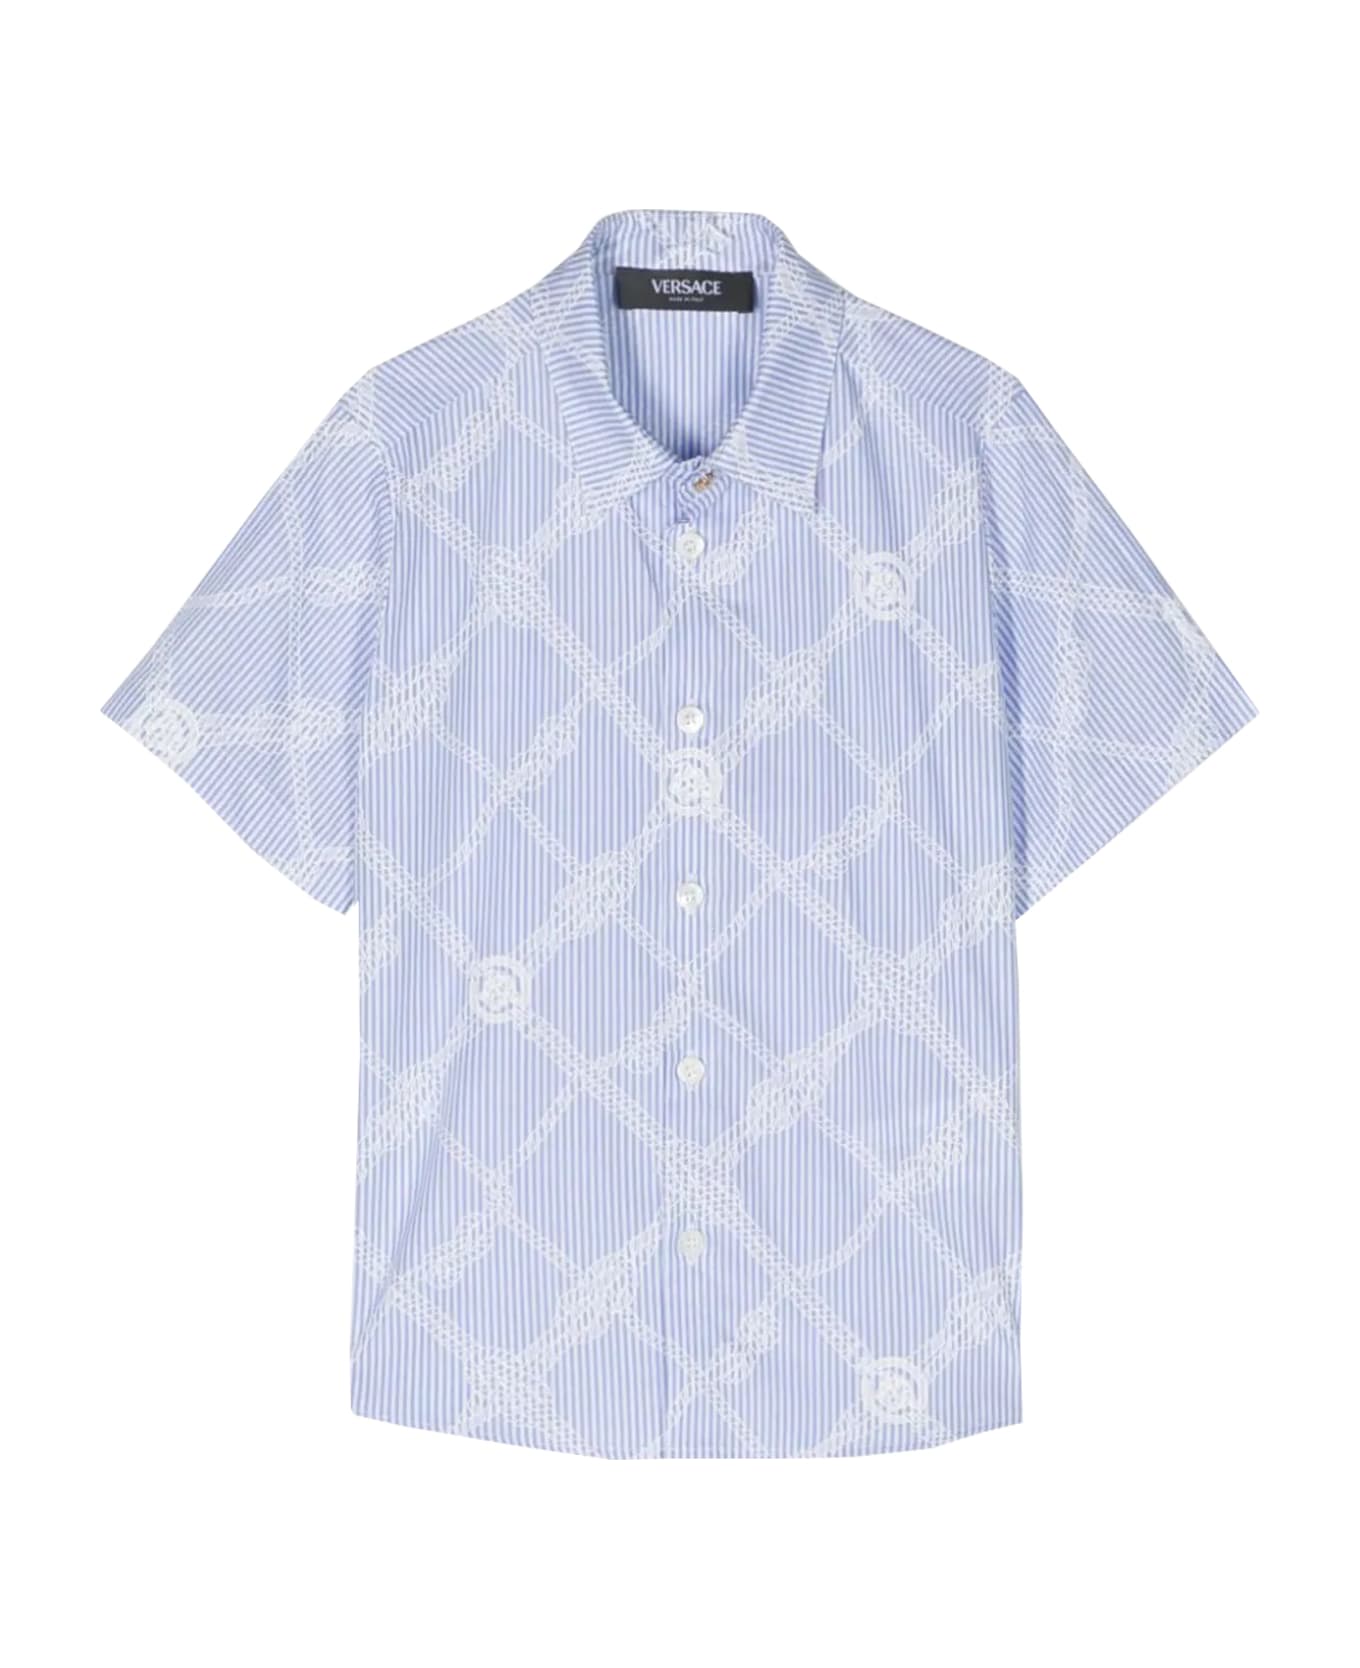 Versace Nautical Medusa Shirt - Light blue シャツ